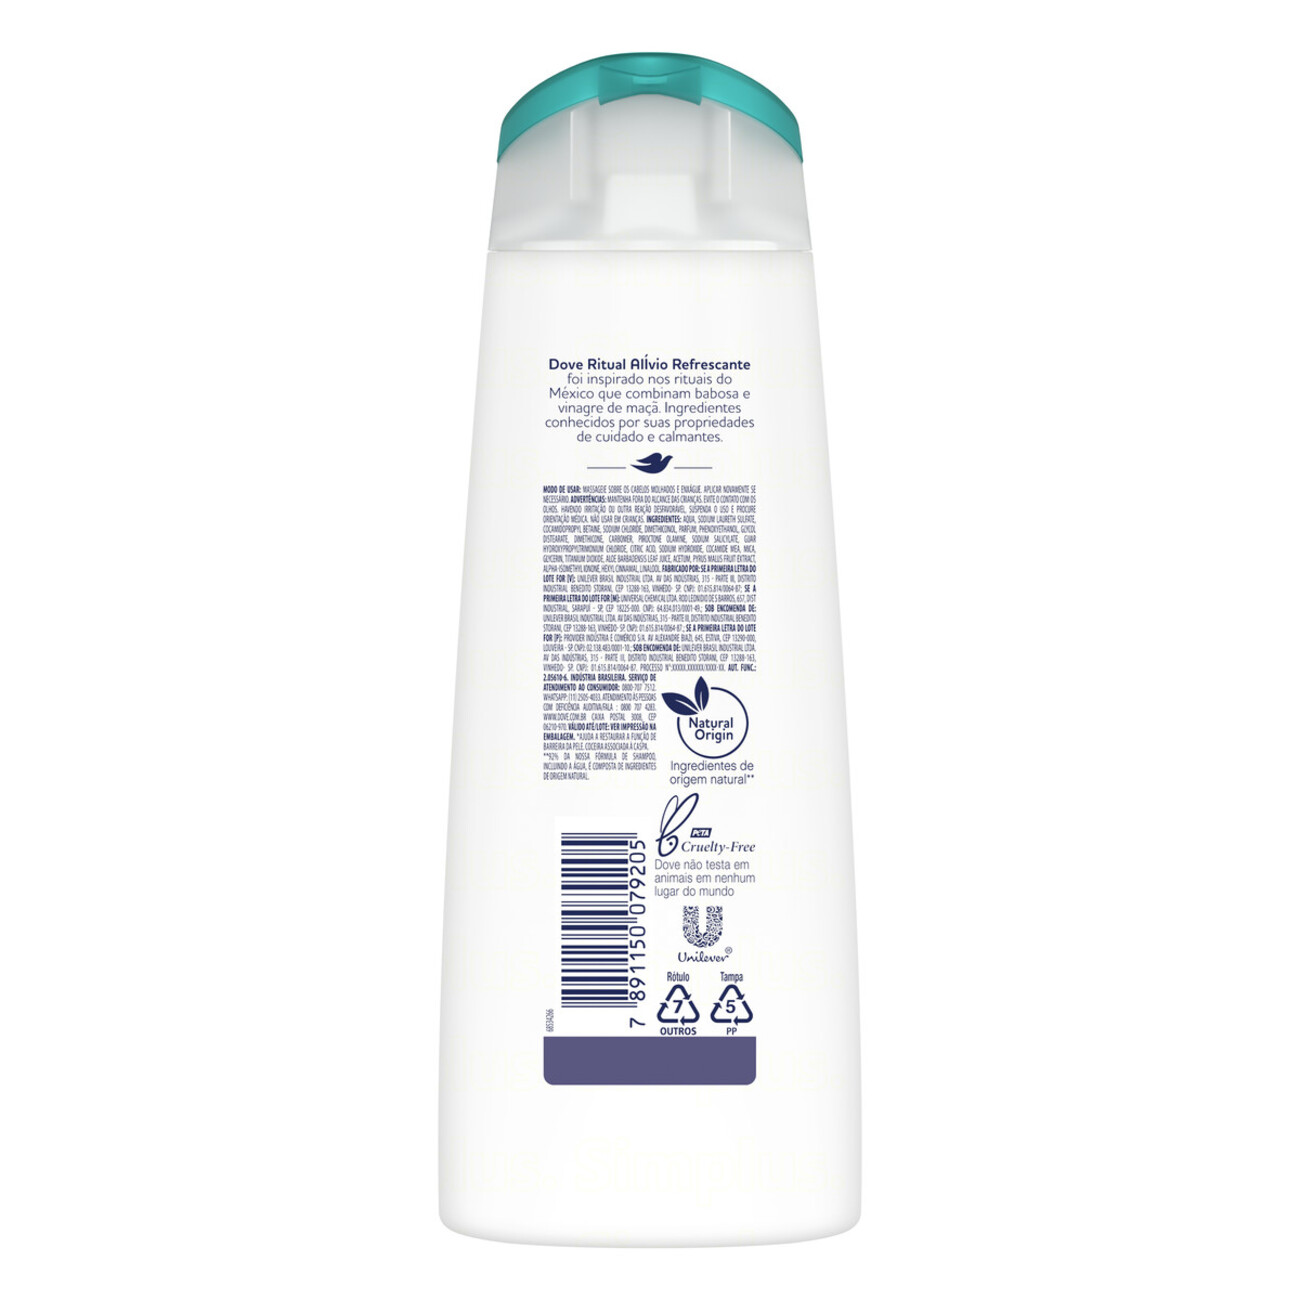 Shampoo Anticaspa Dove Nutritive Secrets Ritual Alvio Refrescante 200mL